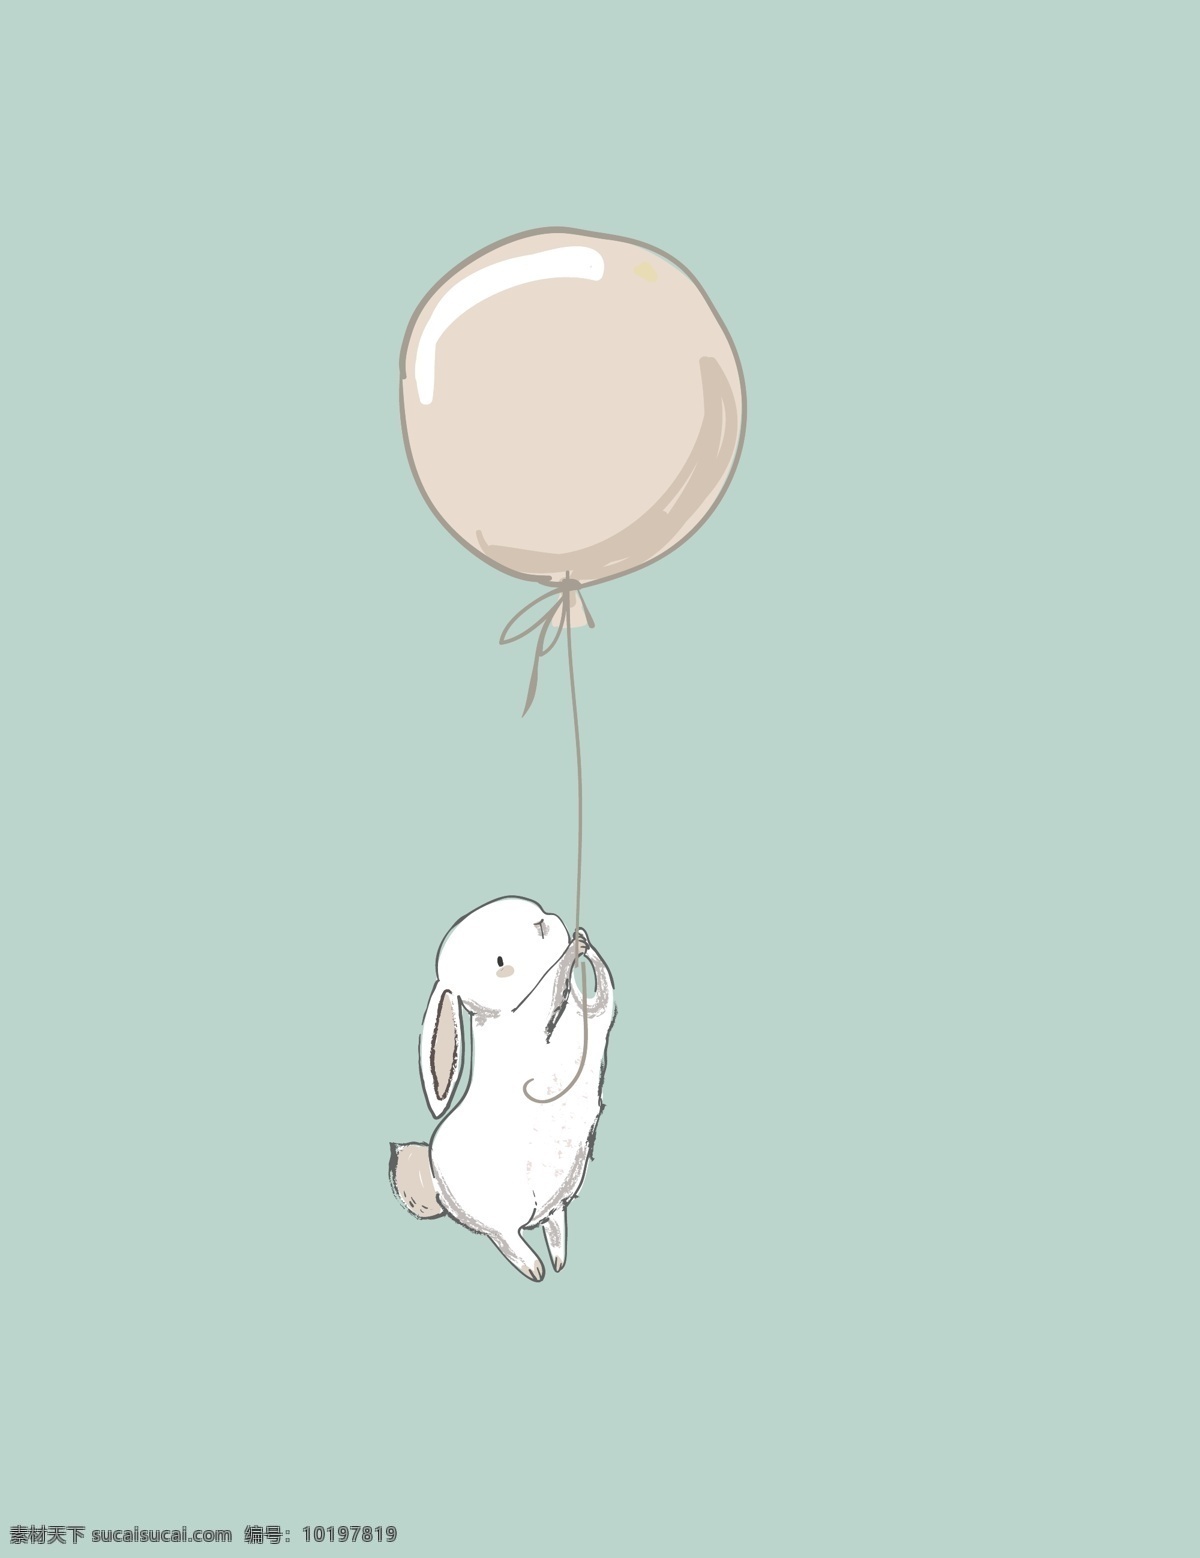 手绘 插画 兔子 气球 壁纸 飞天 少女 清新 可爱 卡通 元素 包装设计